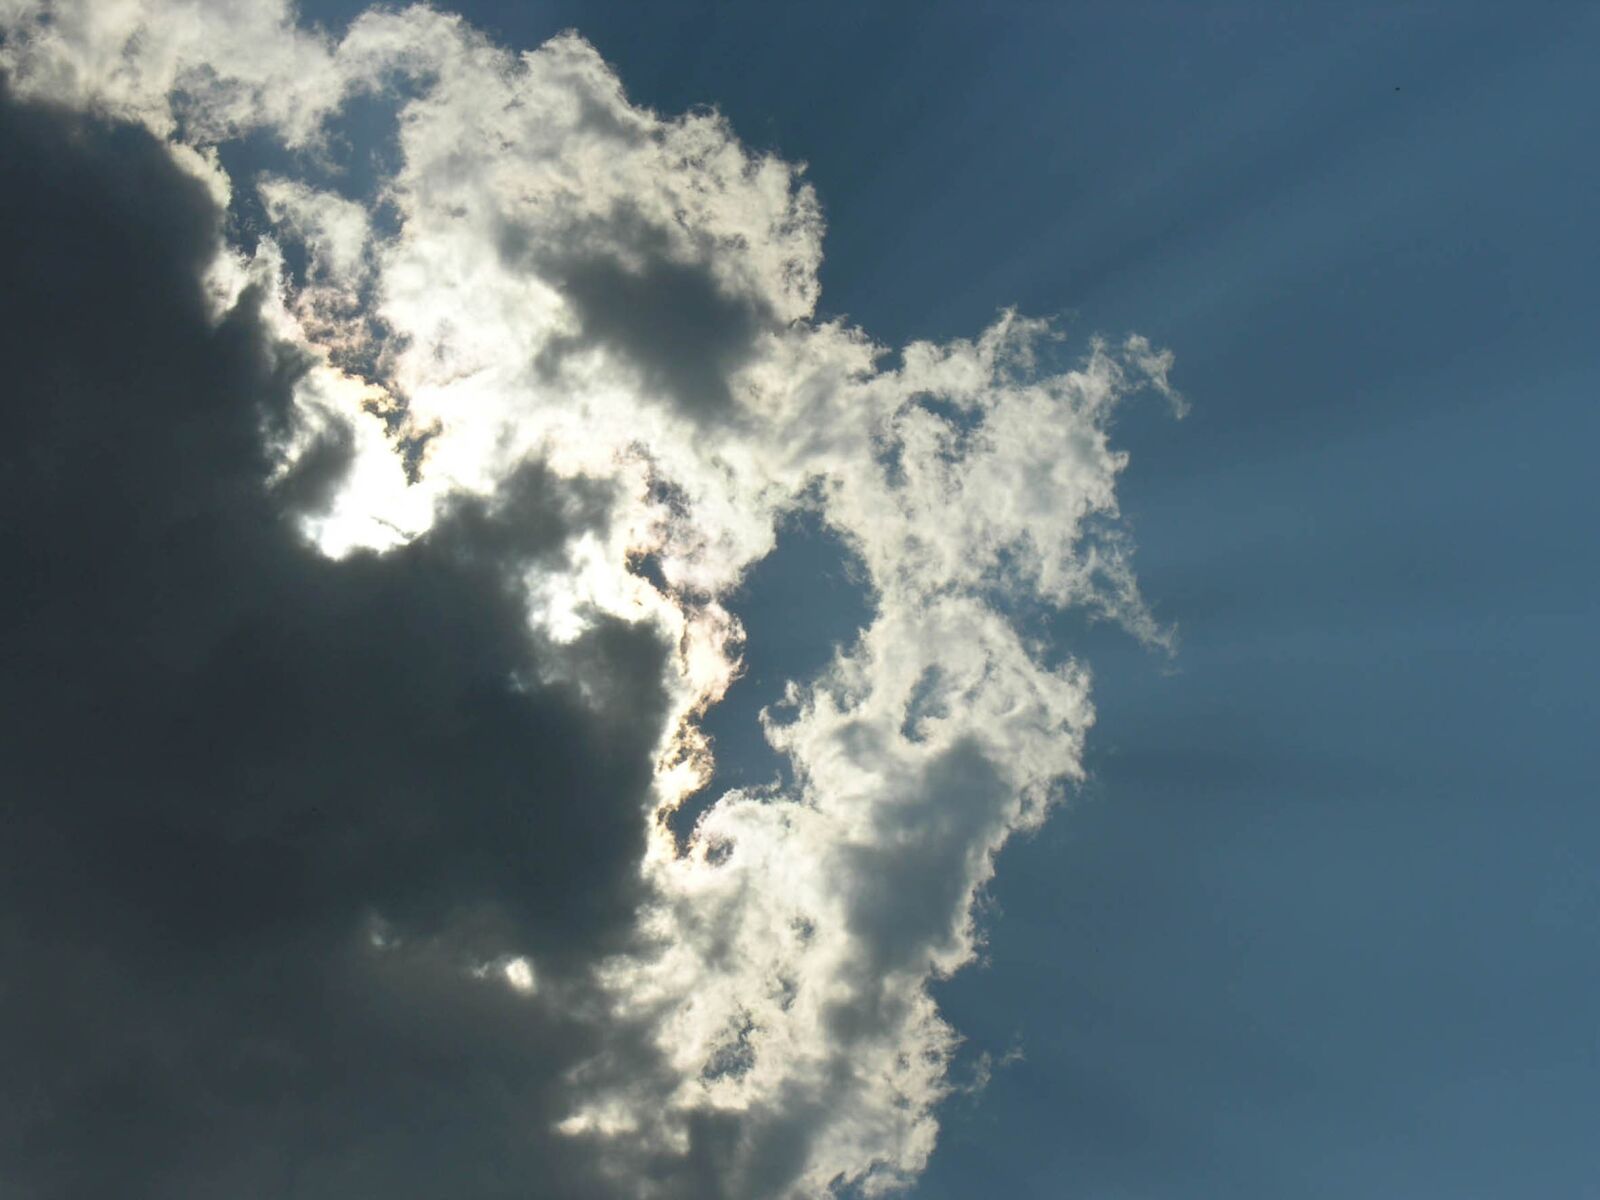 Nikon E8800 sample photo. Heaven, cloudy, sun photography